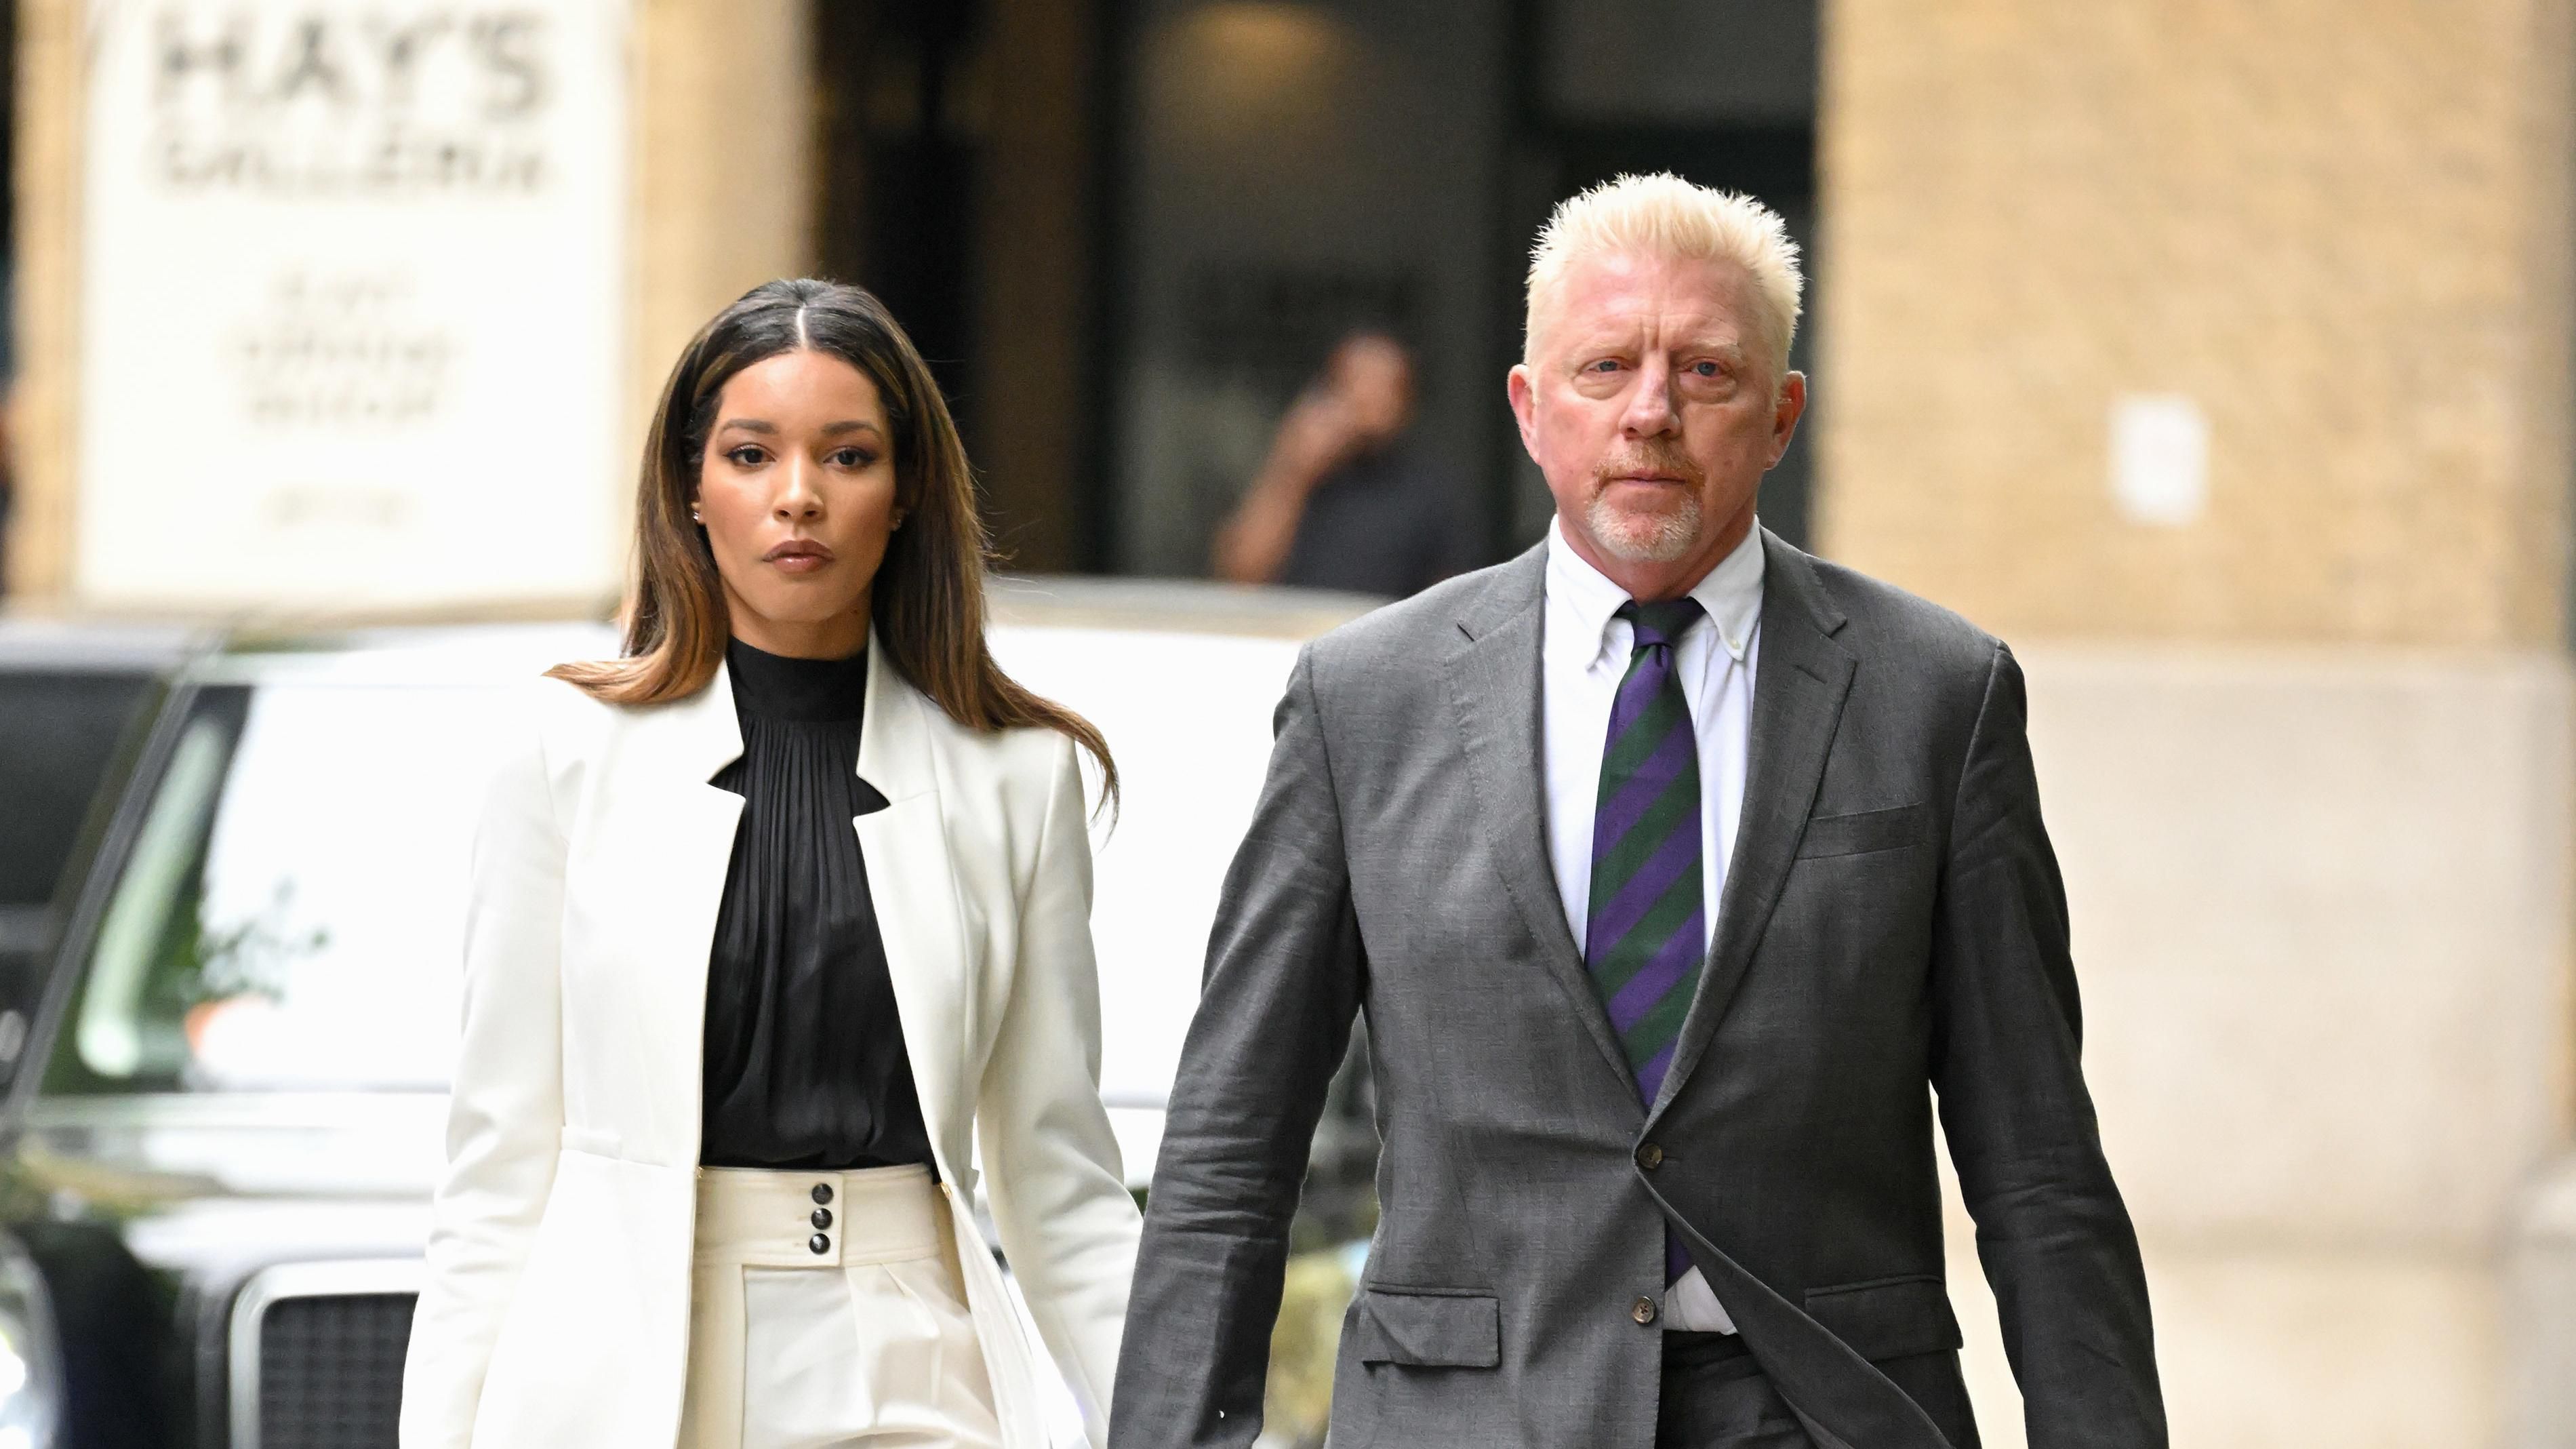 Boris Becker az élettársával érkezett a bírósági tárgyalásra, ahol két és fél év börtönbüntetést sóztak rá/Getty Images